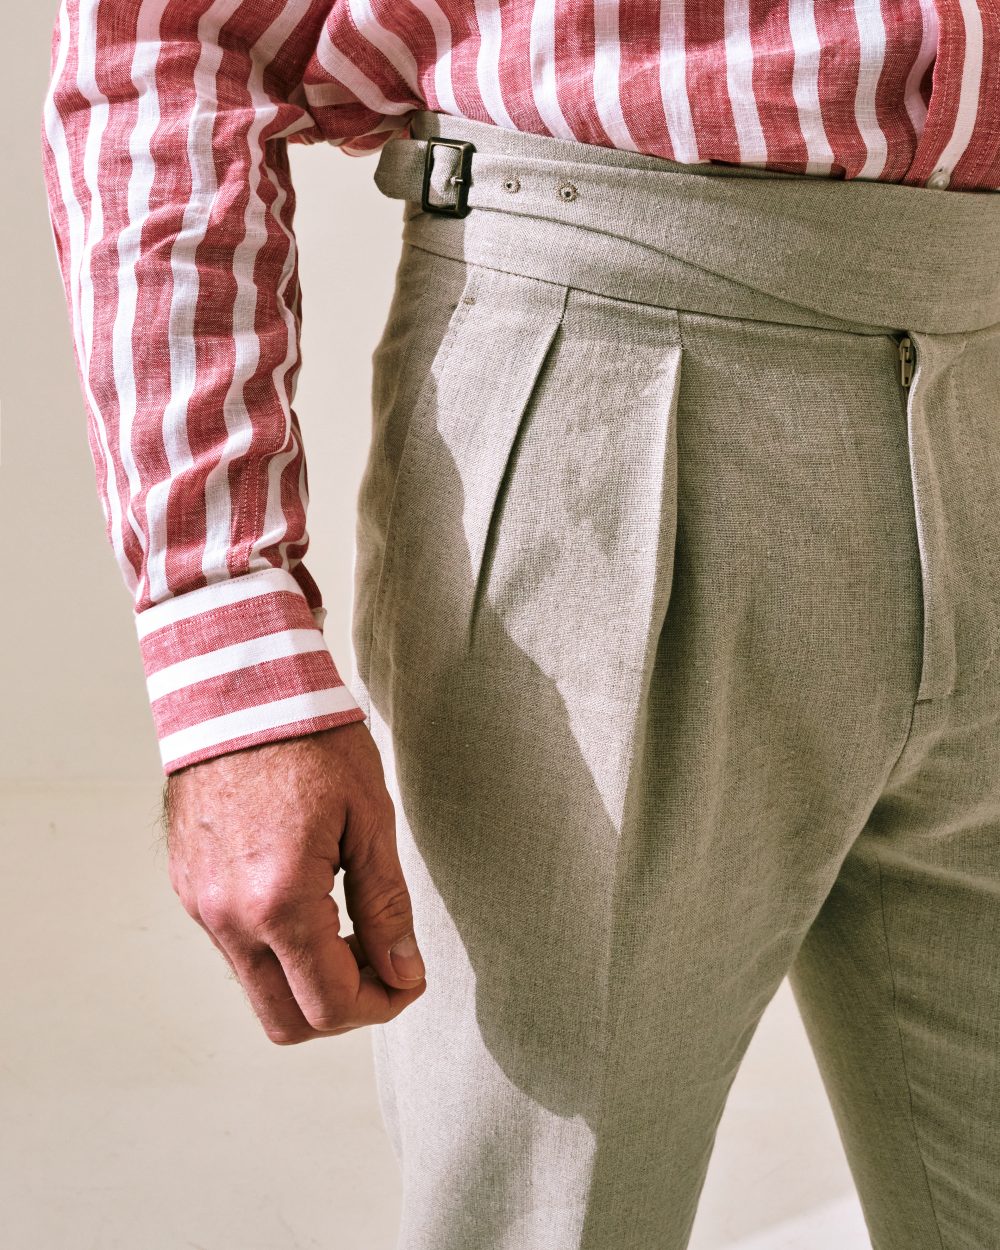 Gurkha Trousers / Monte-Carlo Linen